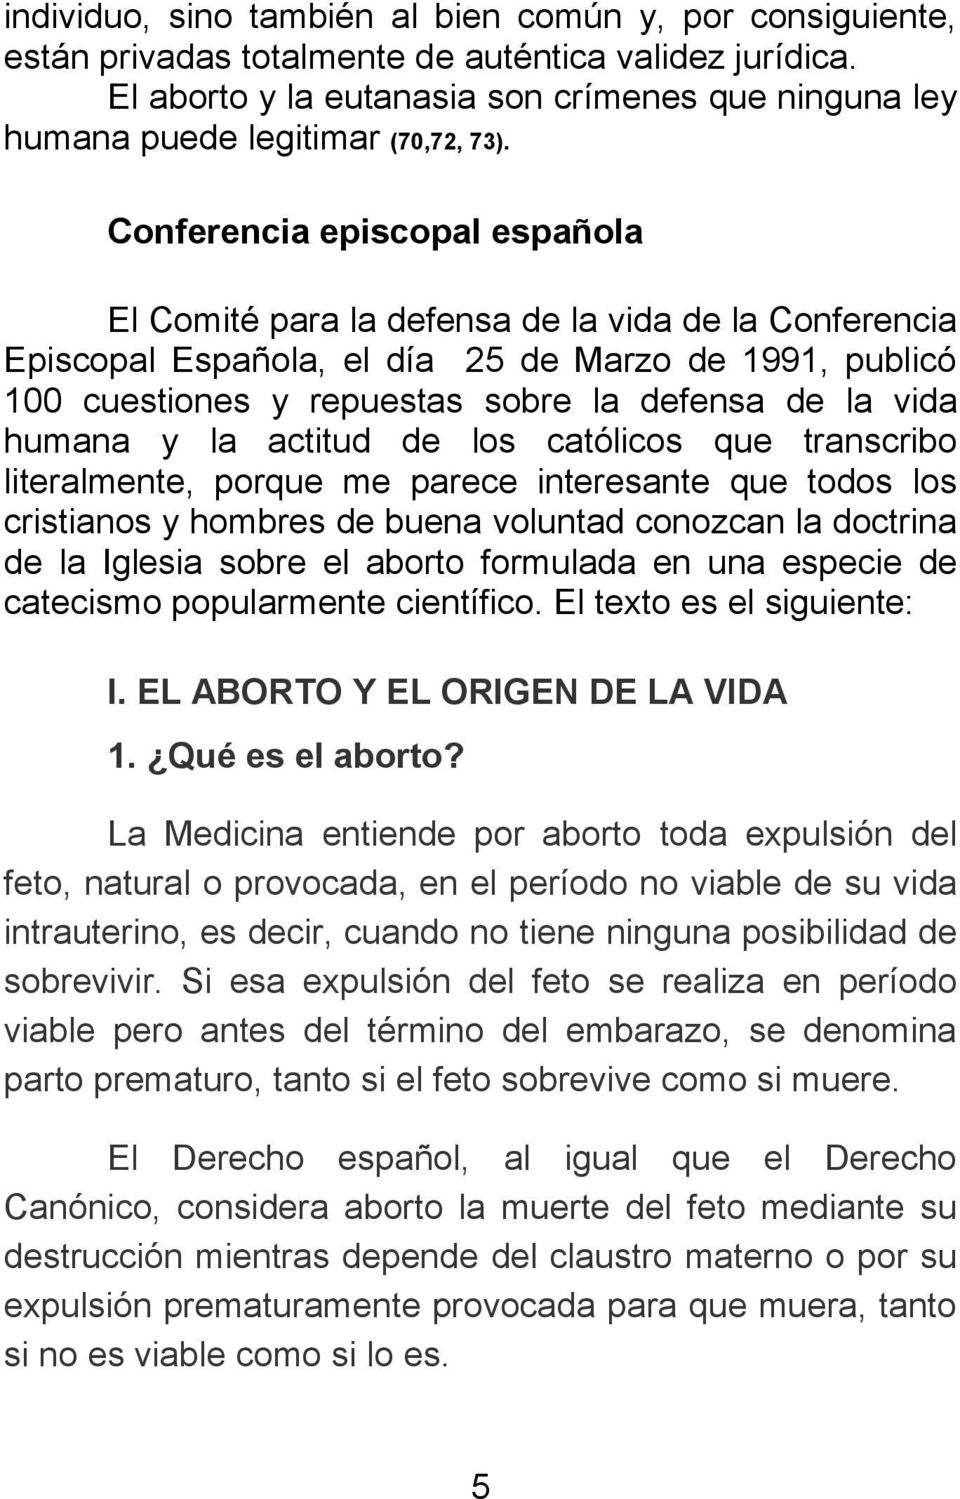 Conferencia episcopal española El Comité para la defensa de la vida de la Conferencia Episcopal Española, el día 25 de Marzo de 1991, publicó 100 cuestiones y repuestas sobre la defensa de la vida